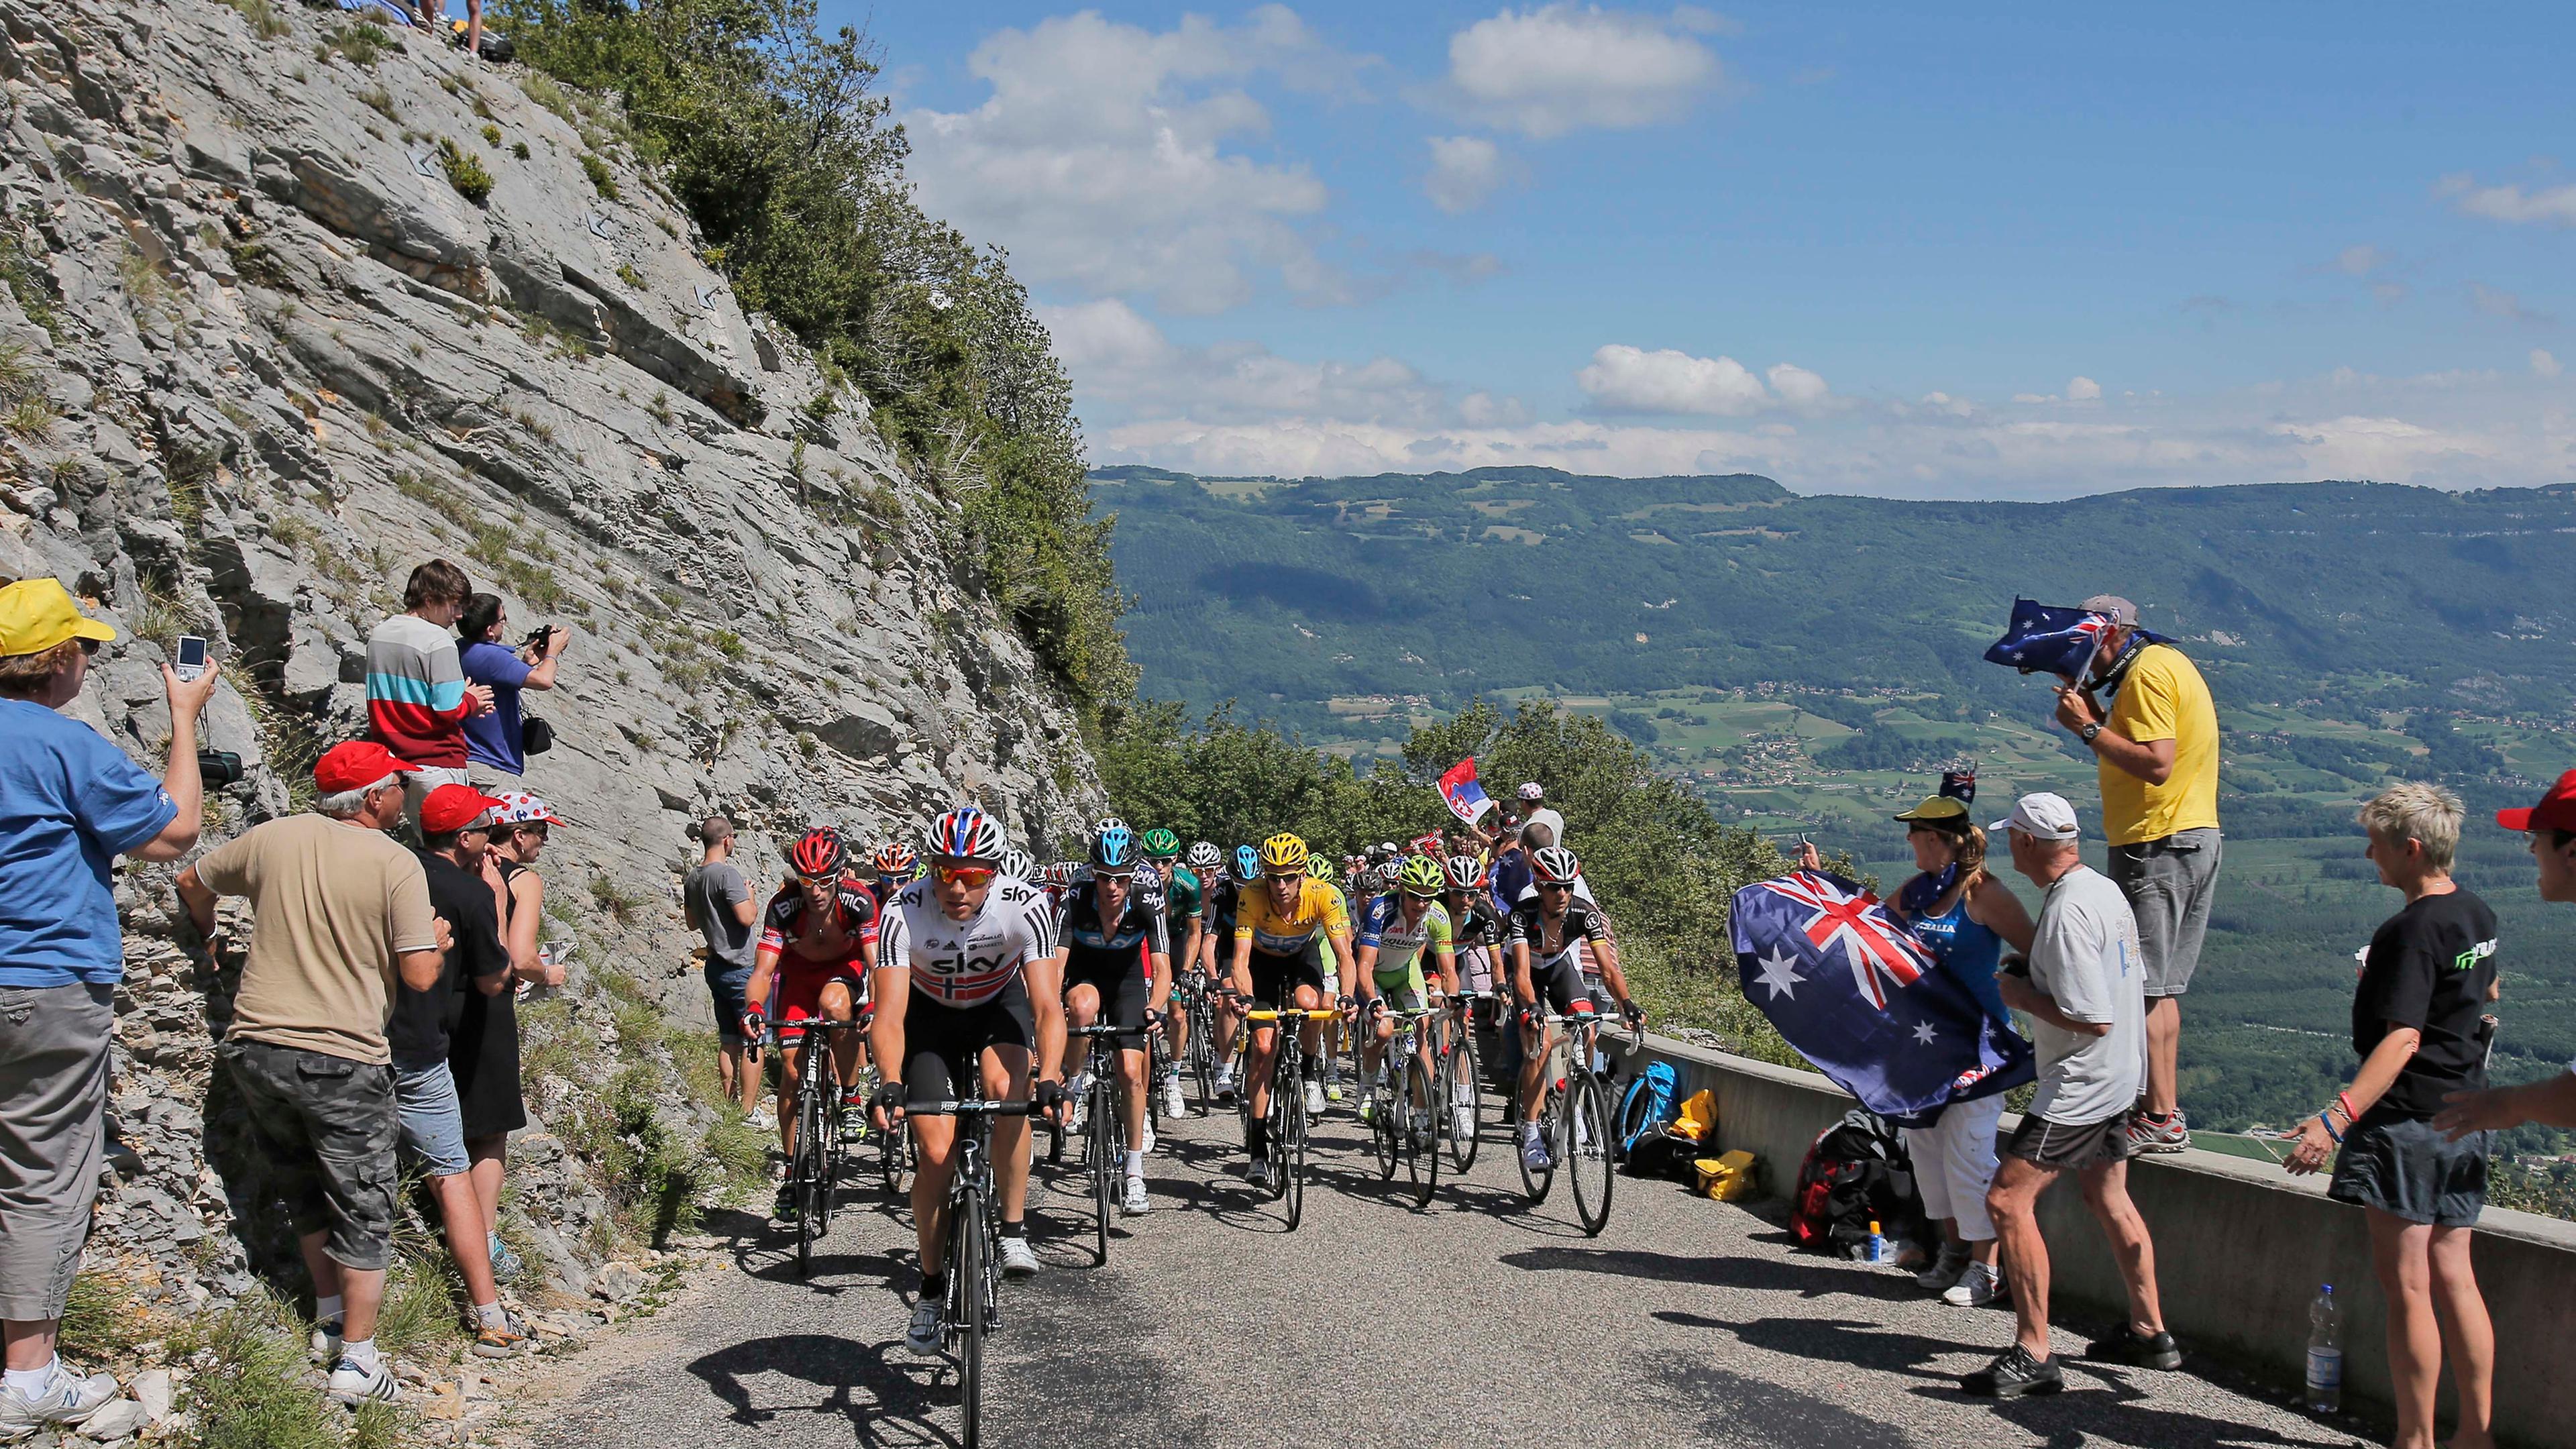 2012 war der Grand Colombier erstmals Teil der Strecke. Nun kehrt die Tour de France zum vierten Mal innerhalb von acht Jahren dorthin zurück.